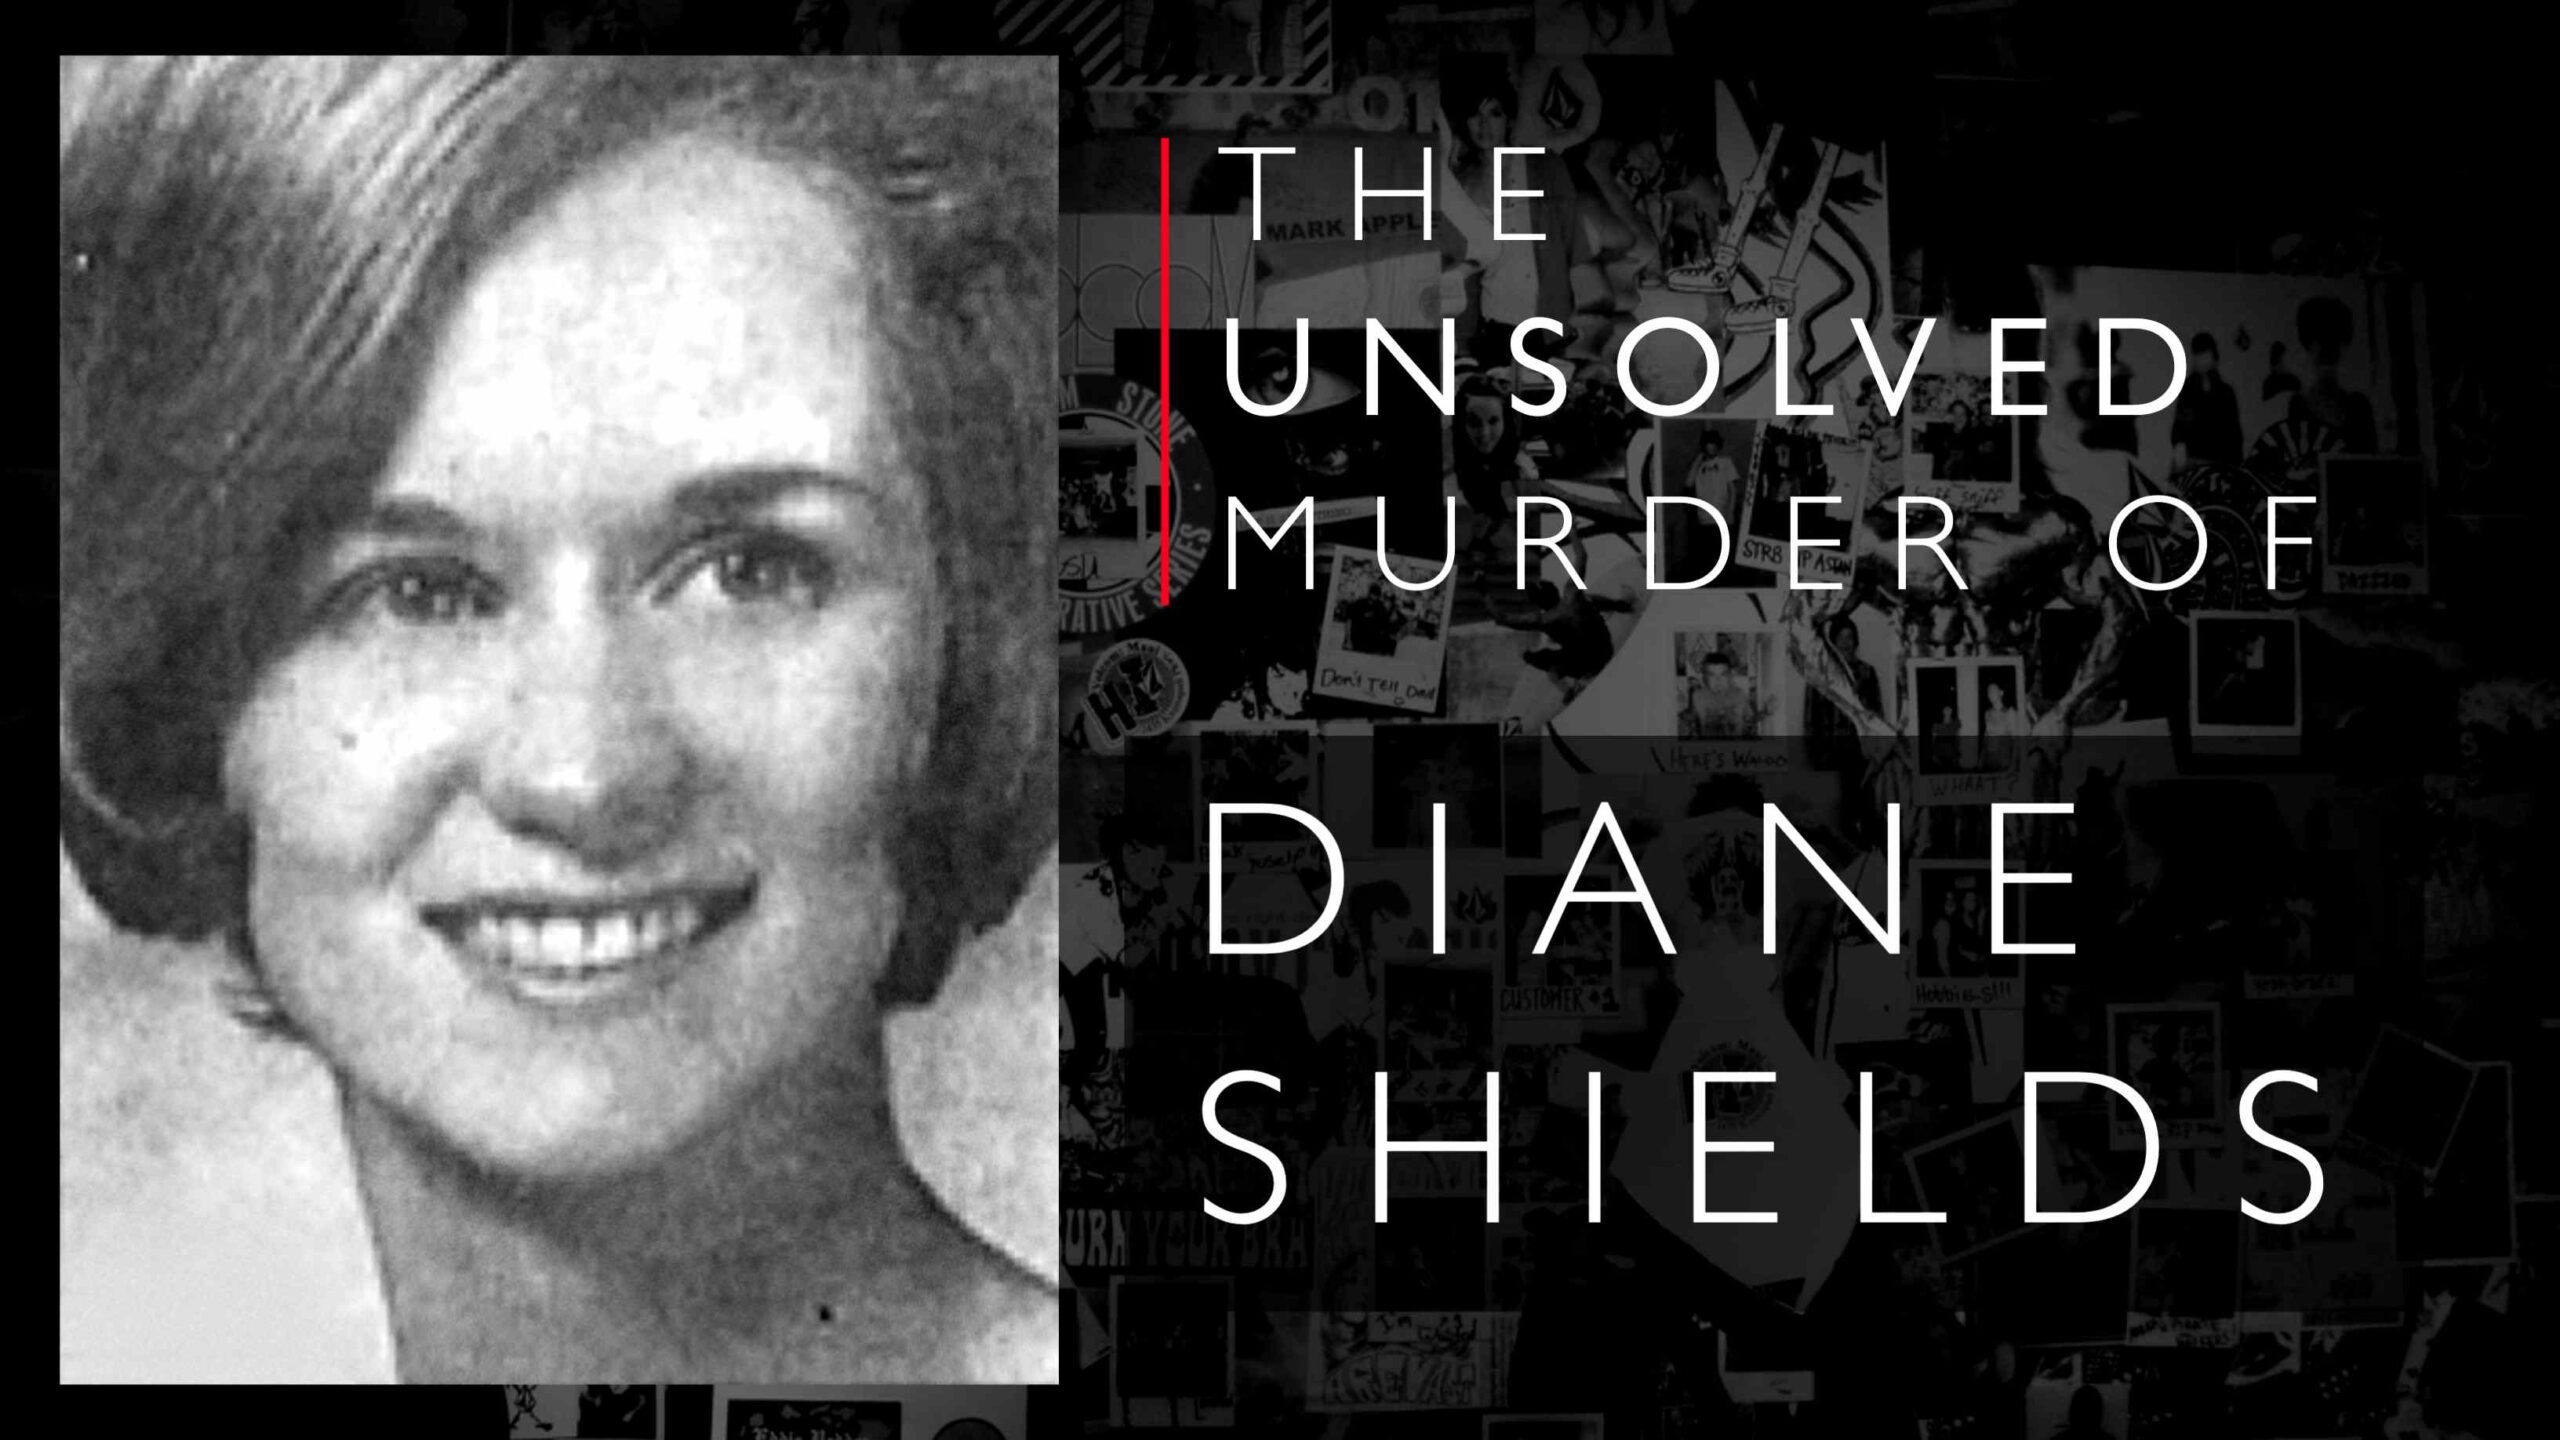 Diane Shields เดินตามรอยเท้าของ Mary Shotwell Little ในทางใดทางหนึ่งจากนั้นก็พบว่าถูกฆ่าตาย